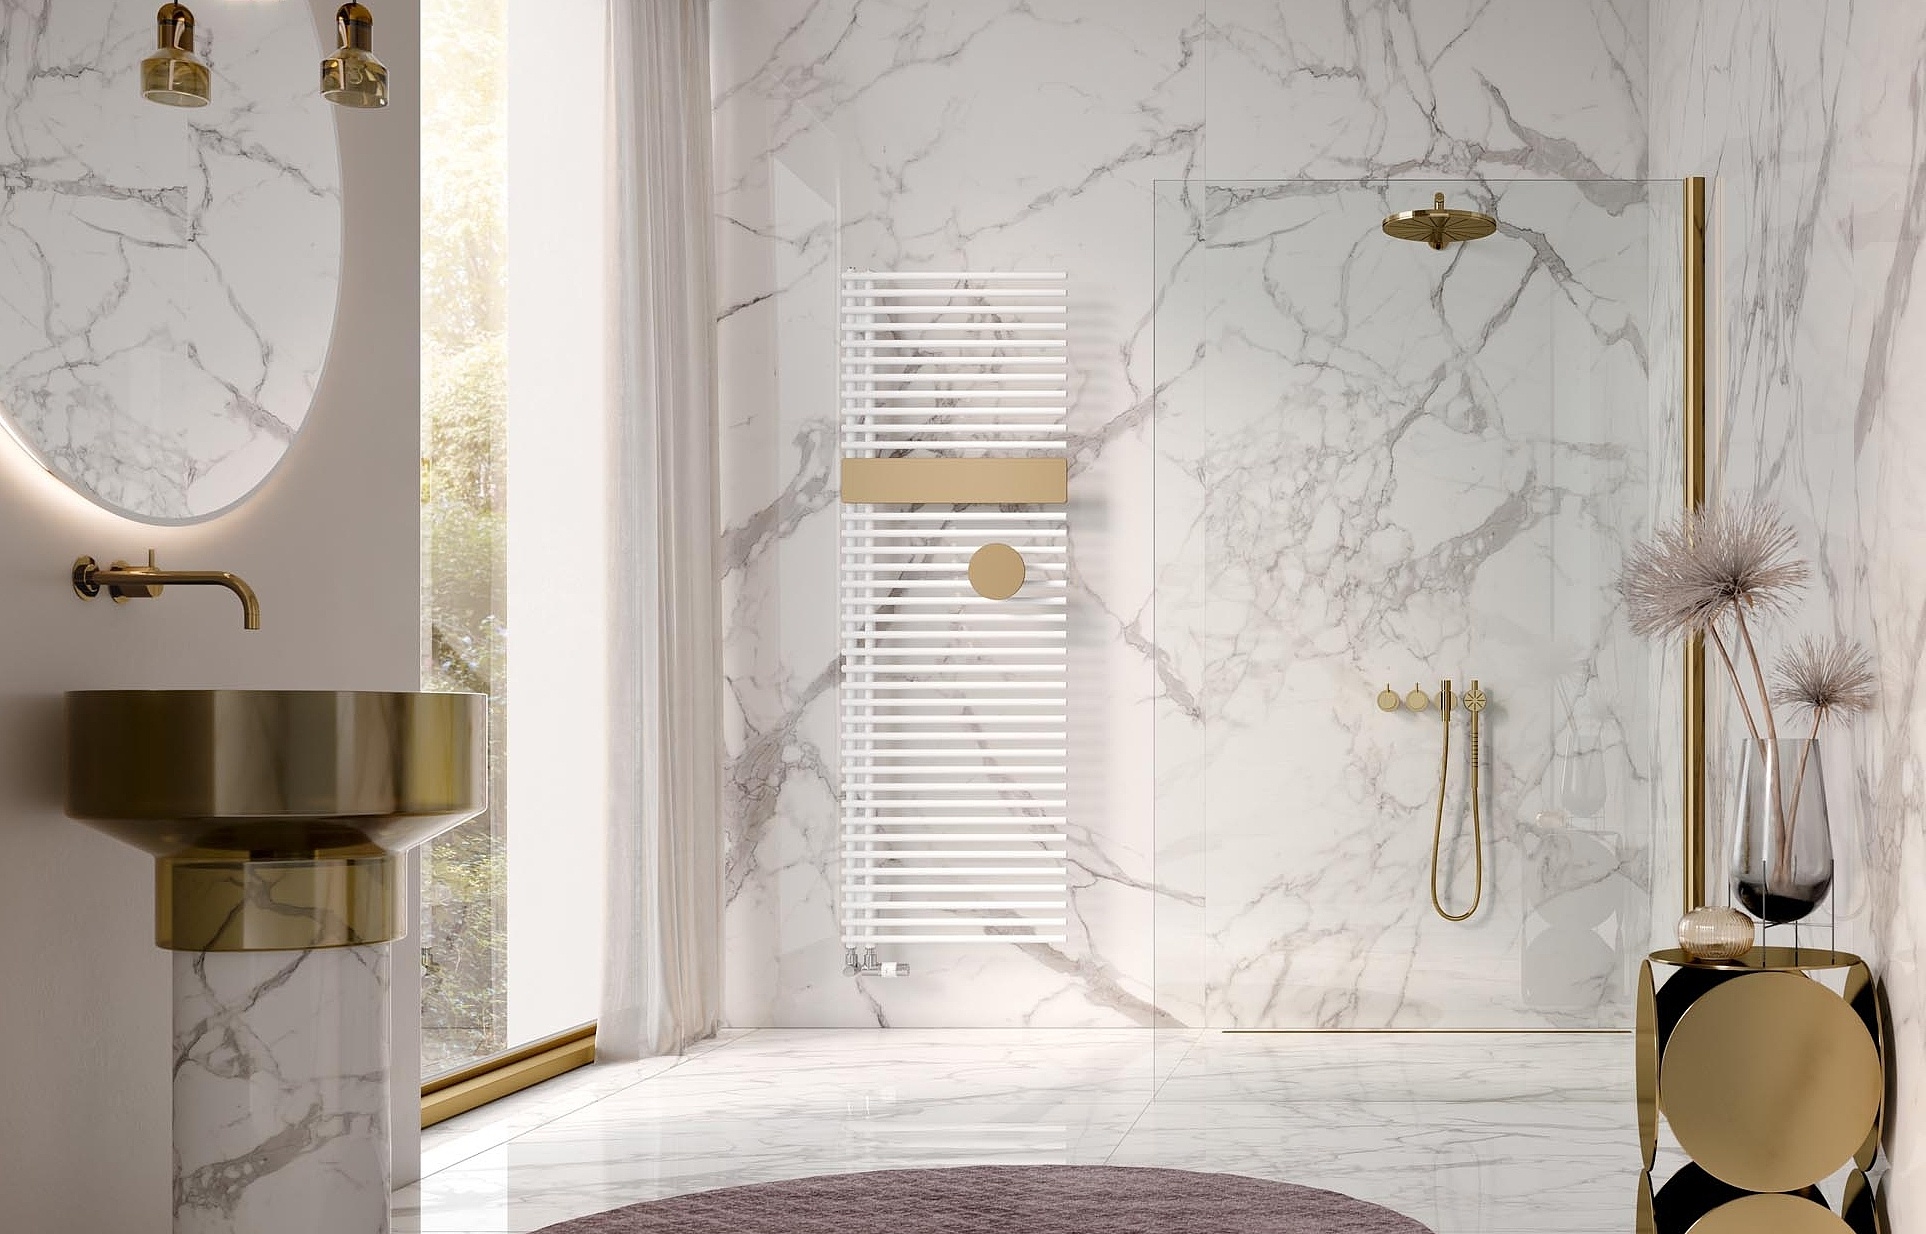 Grzejniki dekoracyjne i łazienkowe Kermi Credo Half round – otwarte z boku dla zapewnienia optymalnego komfortu.